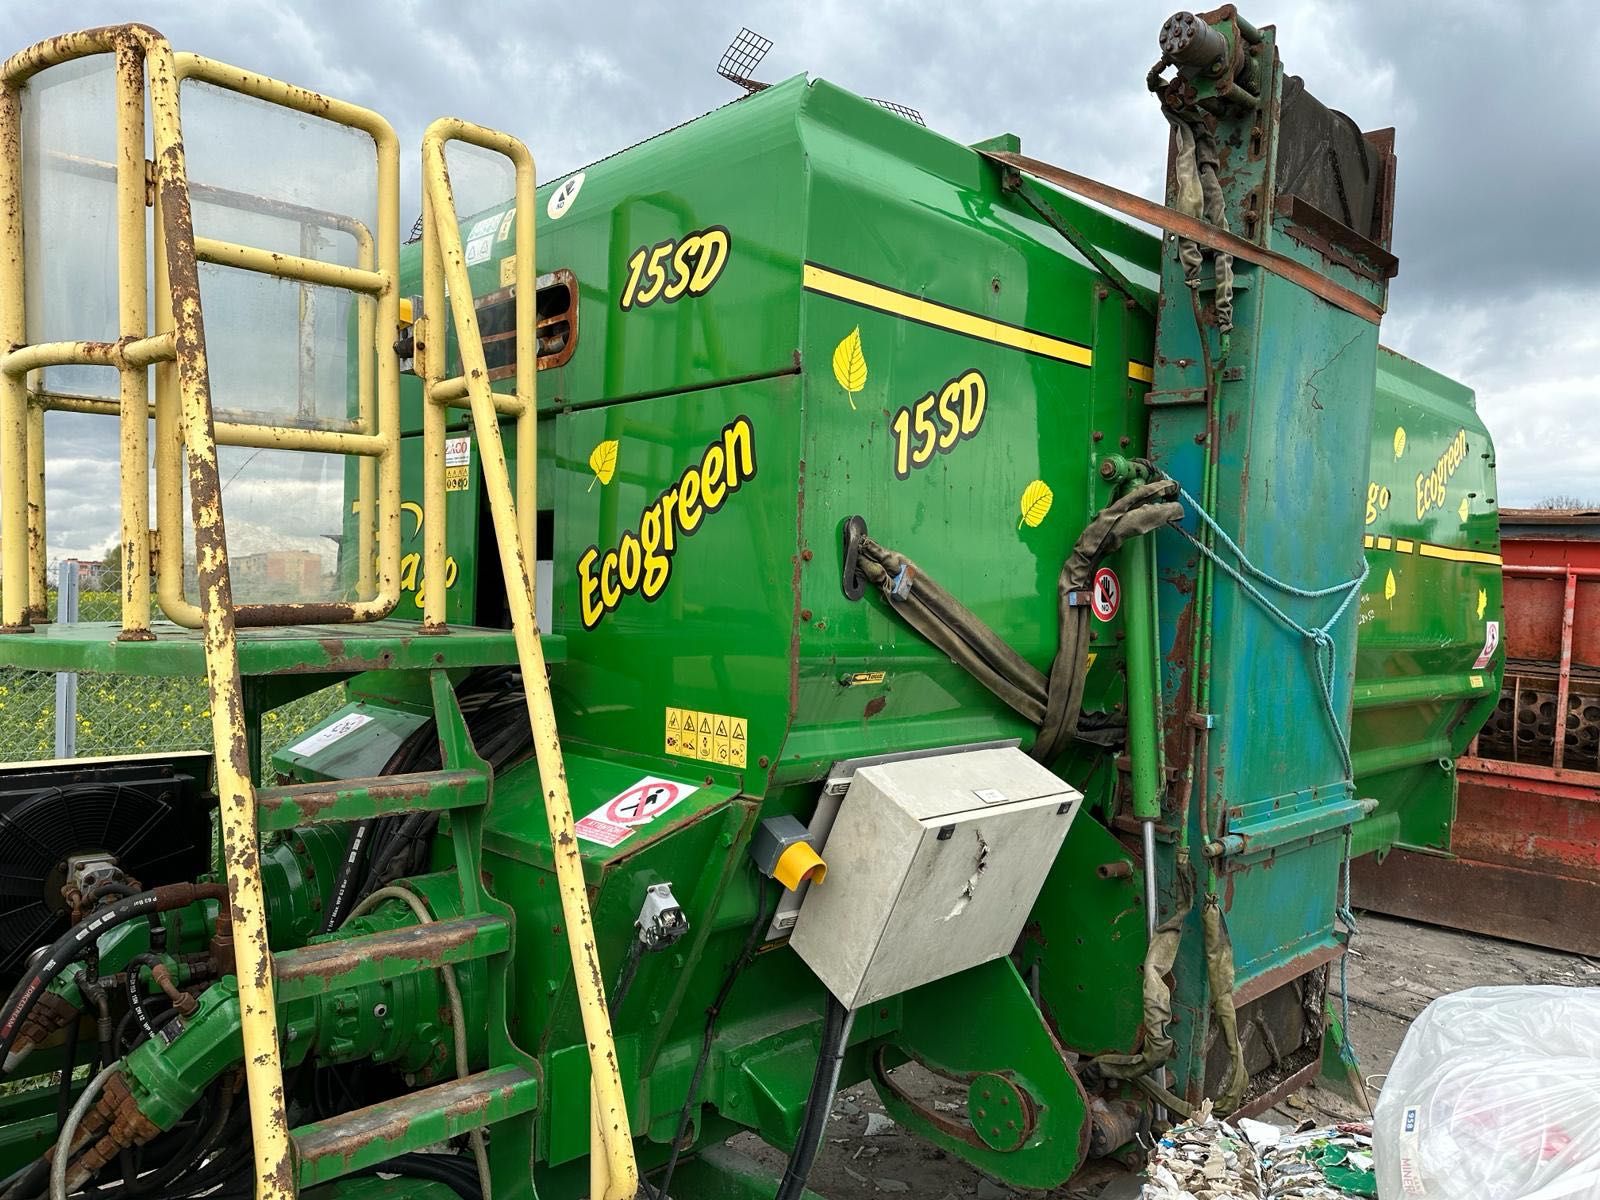 Rozdrabniacz odpadów do kompostowania - ZAGO Ecogreen 15SD